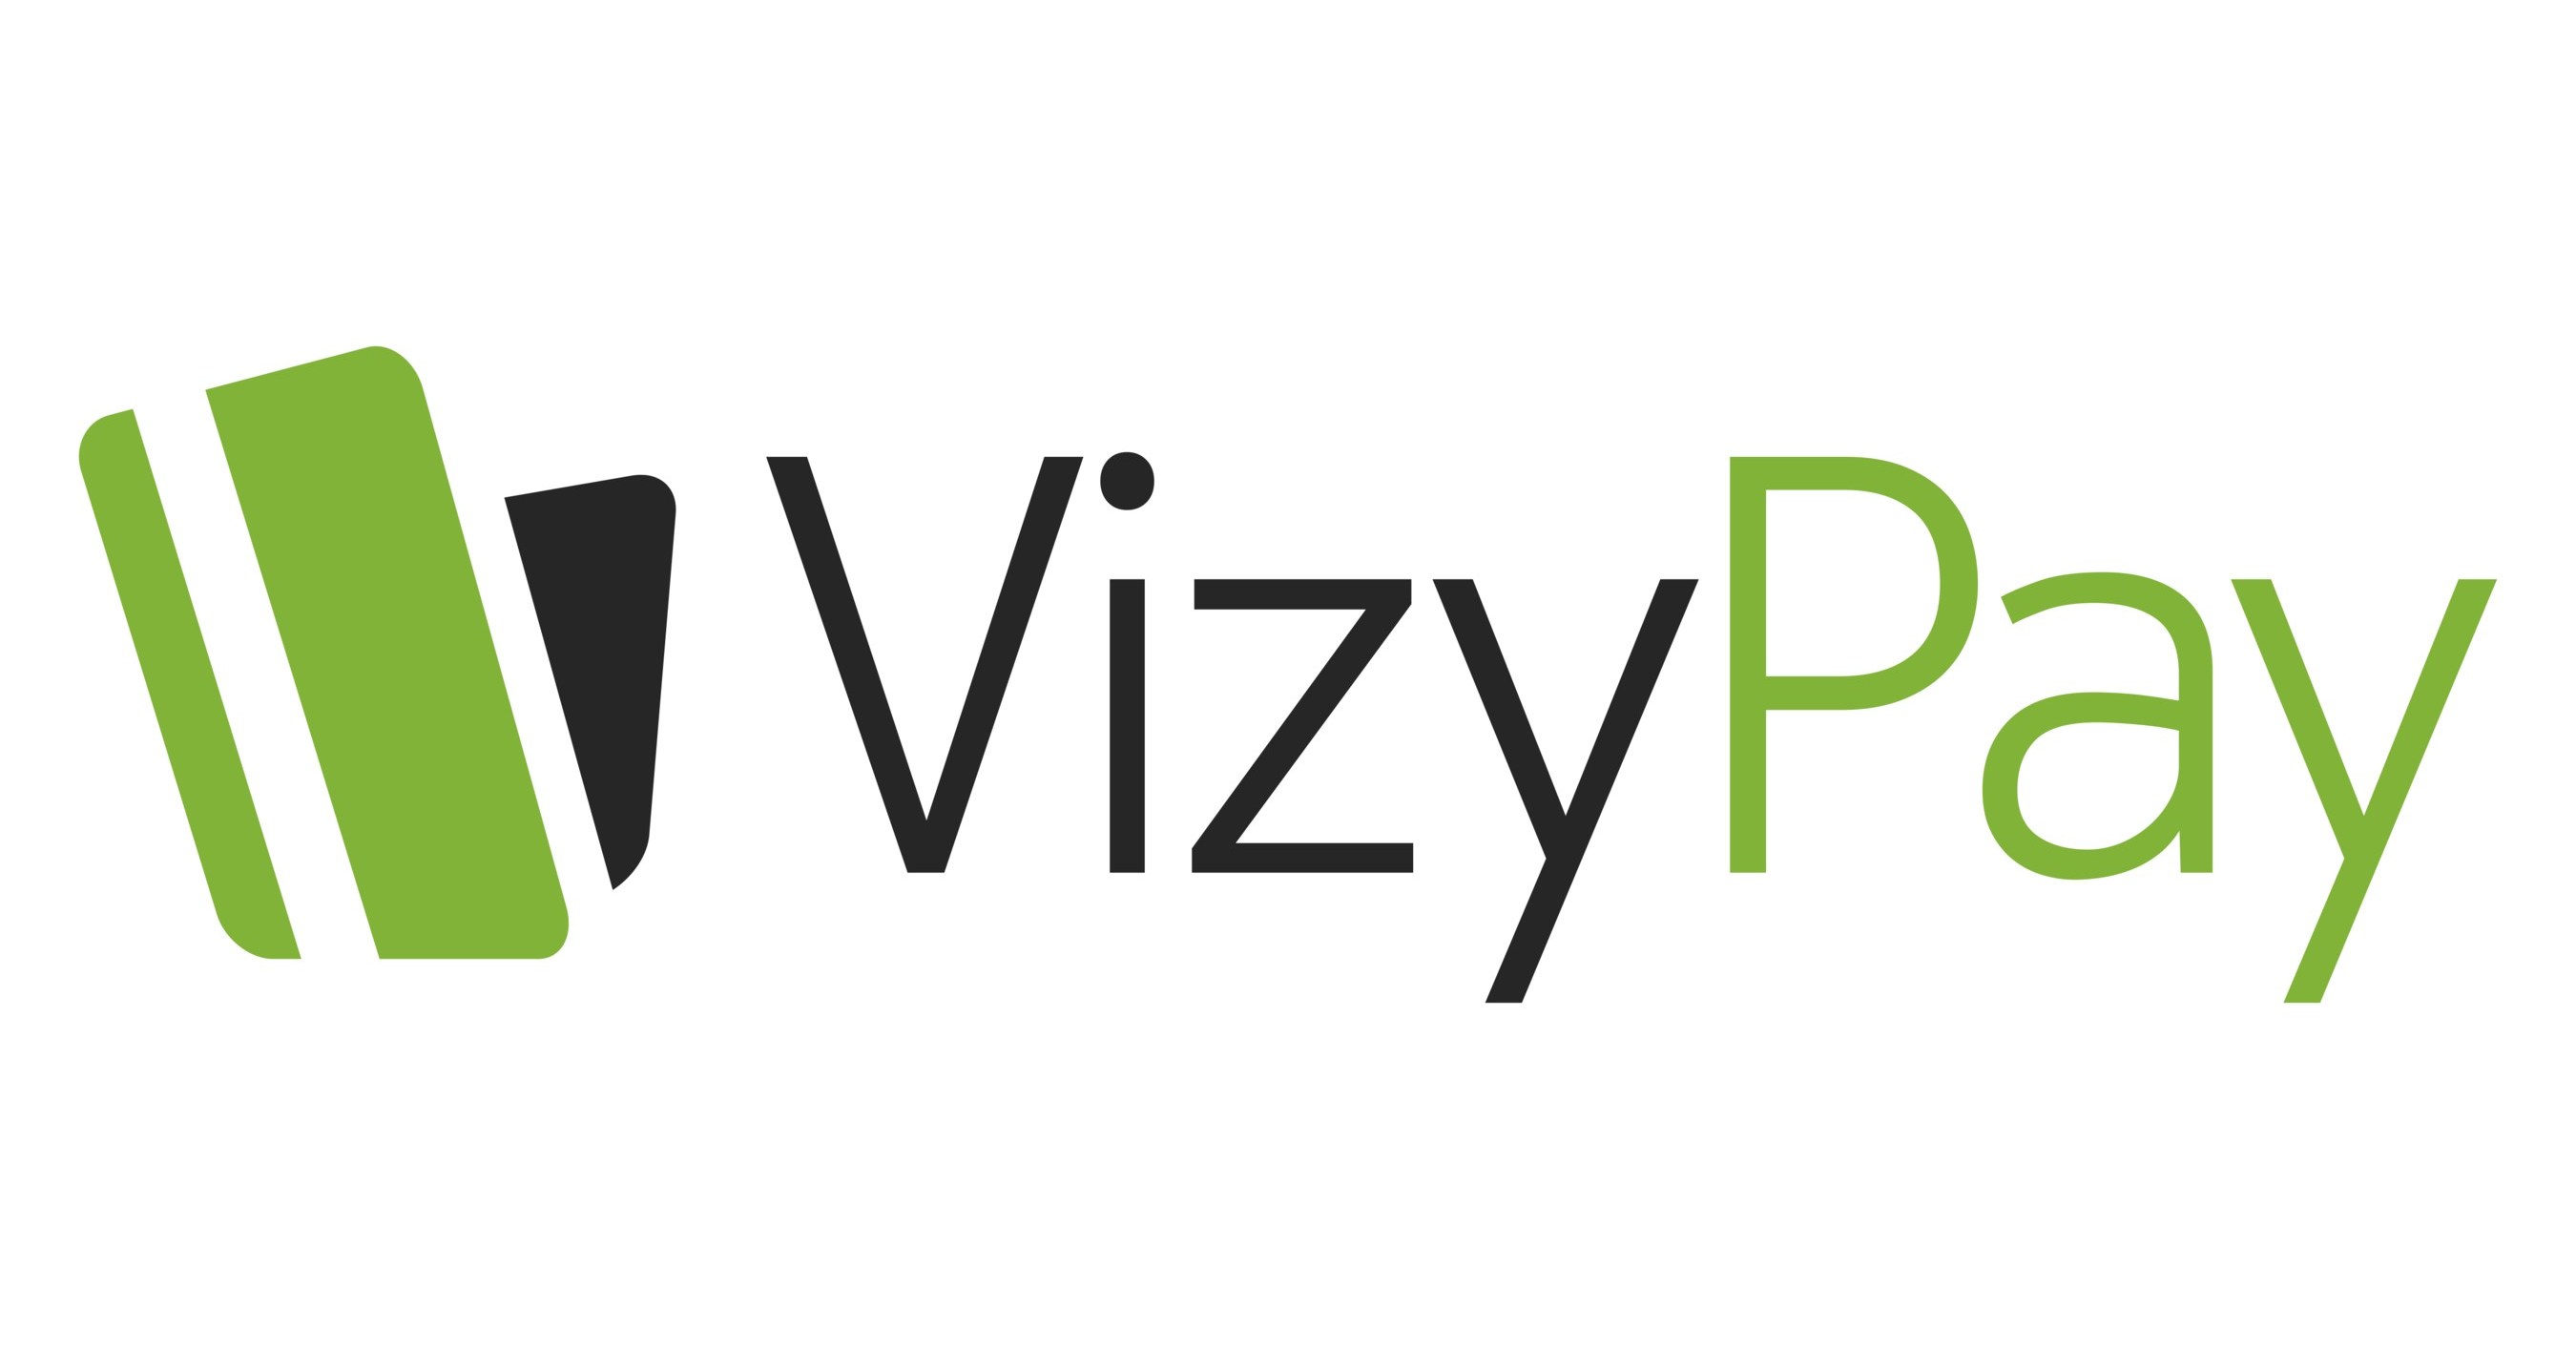 VizyPay